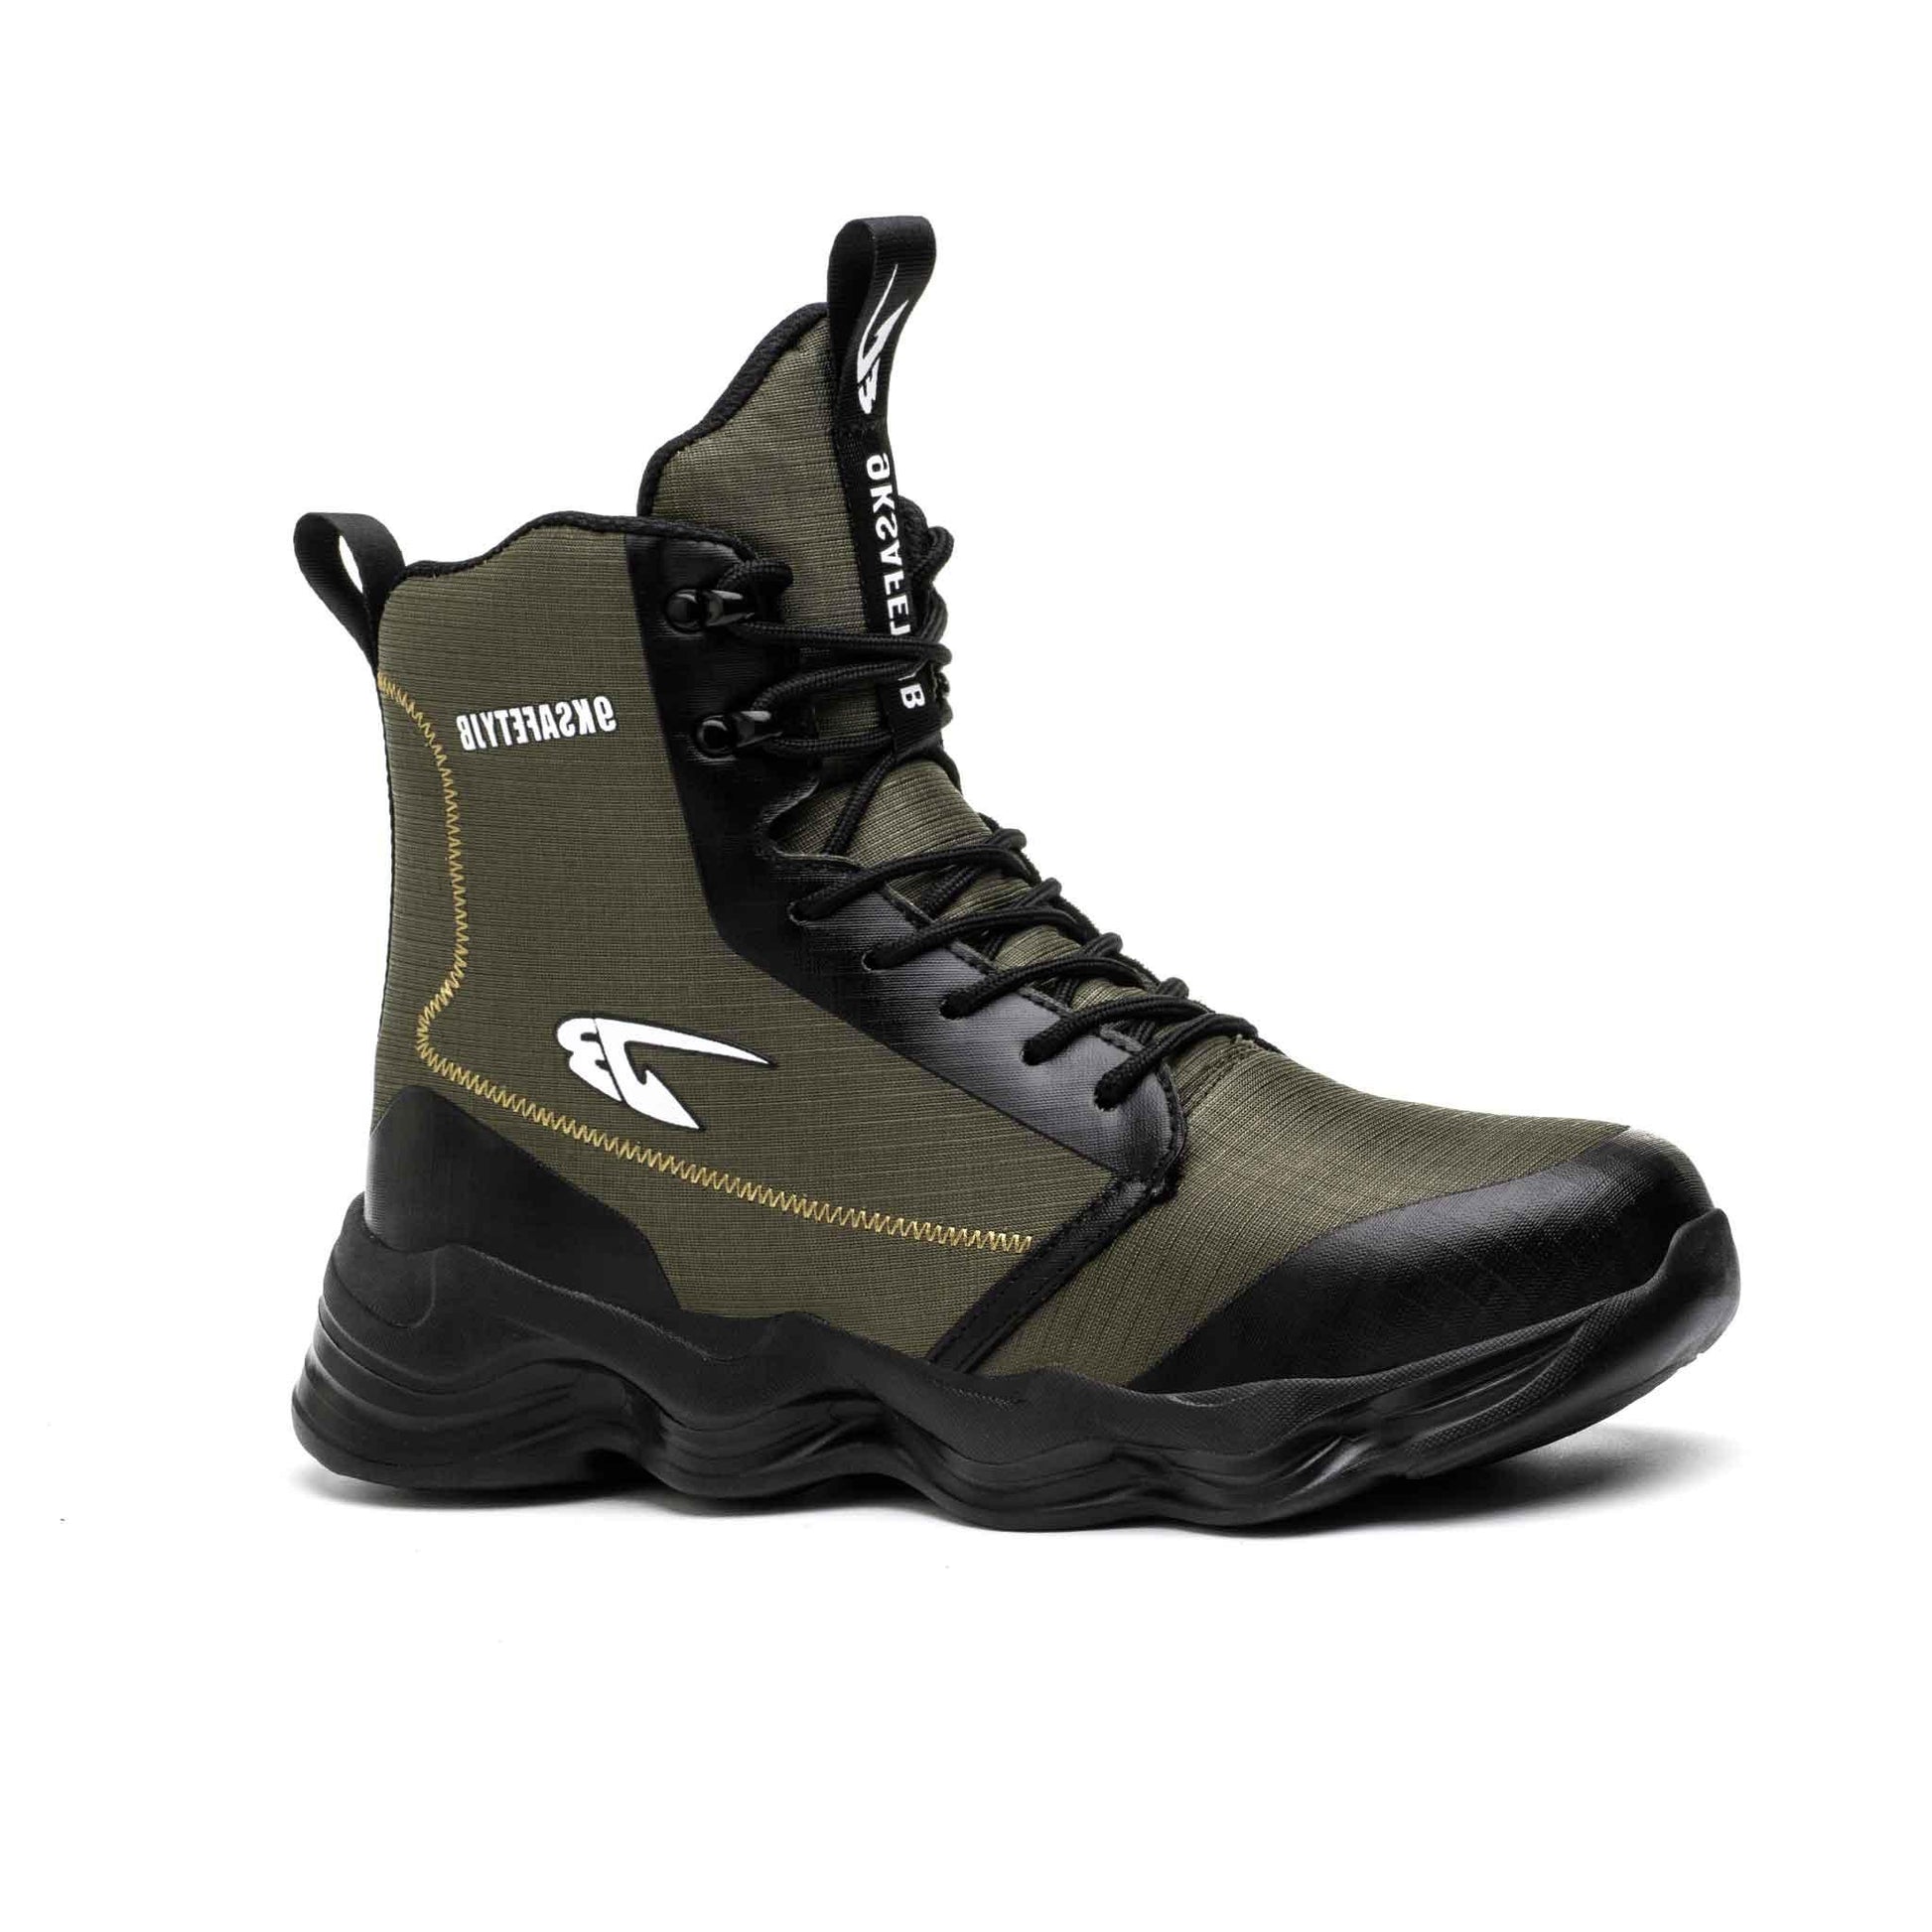 Men's 8" Steel Toe Boots - Slip Resistant | B158 - USINE PRO Footwear